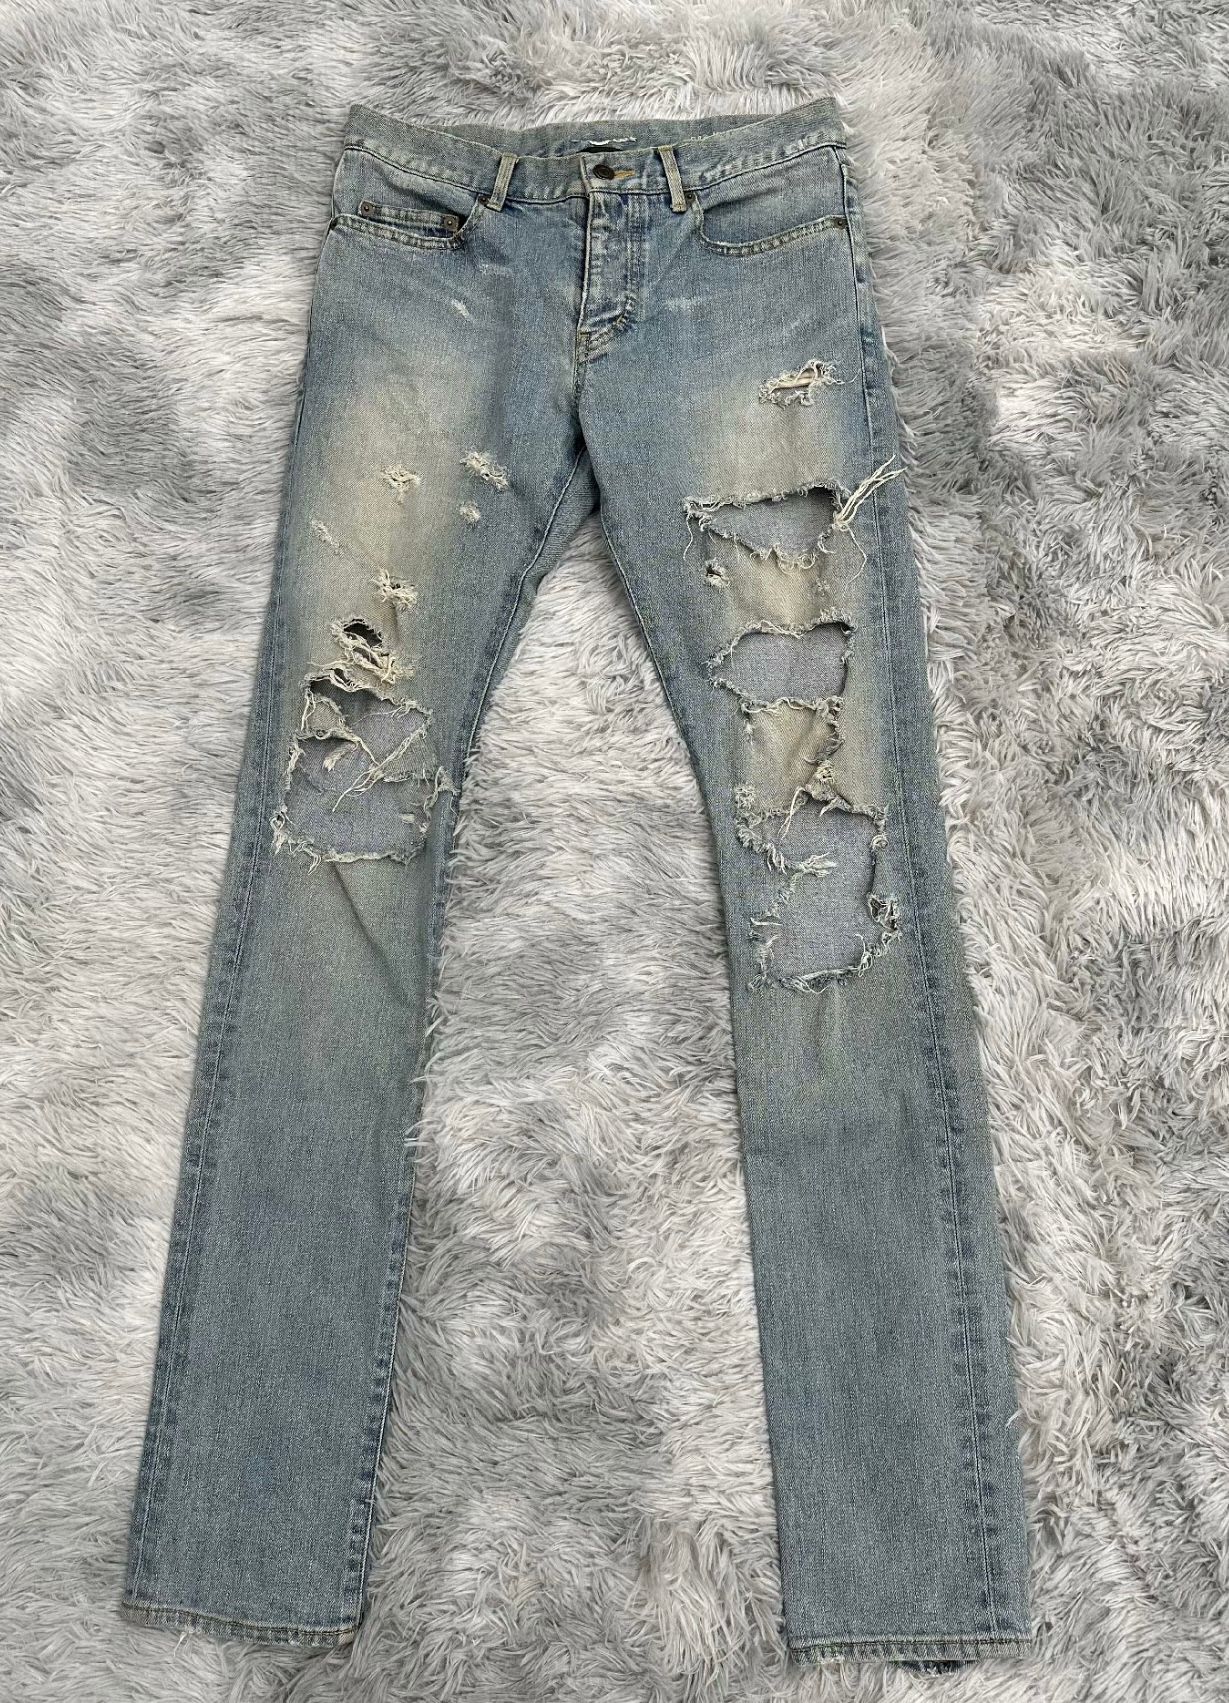 Saint Laurent 2014 Destroyed D02 Jeans by Hedi - 1